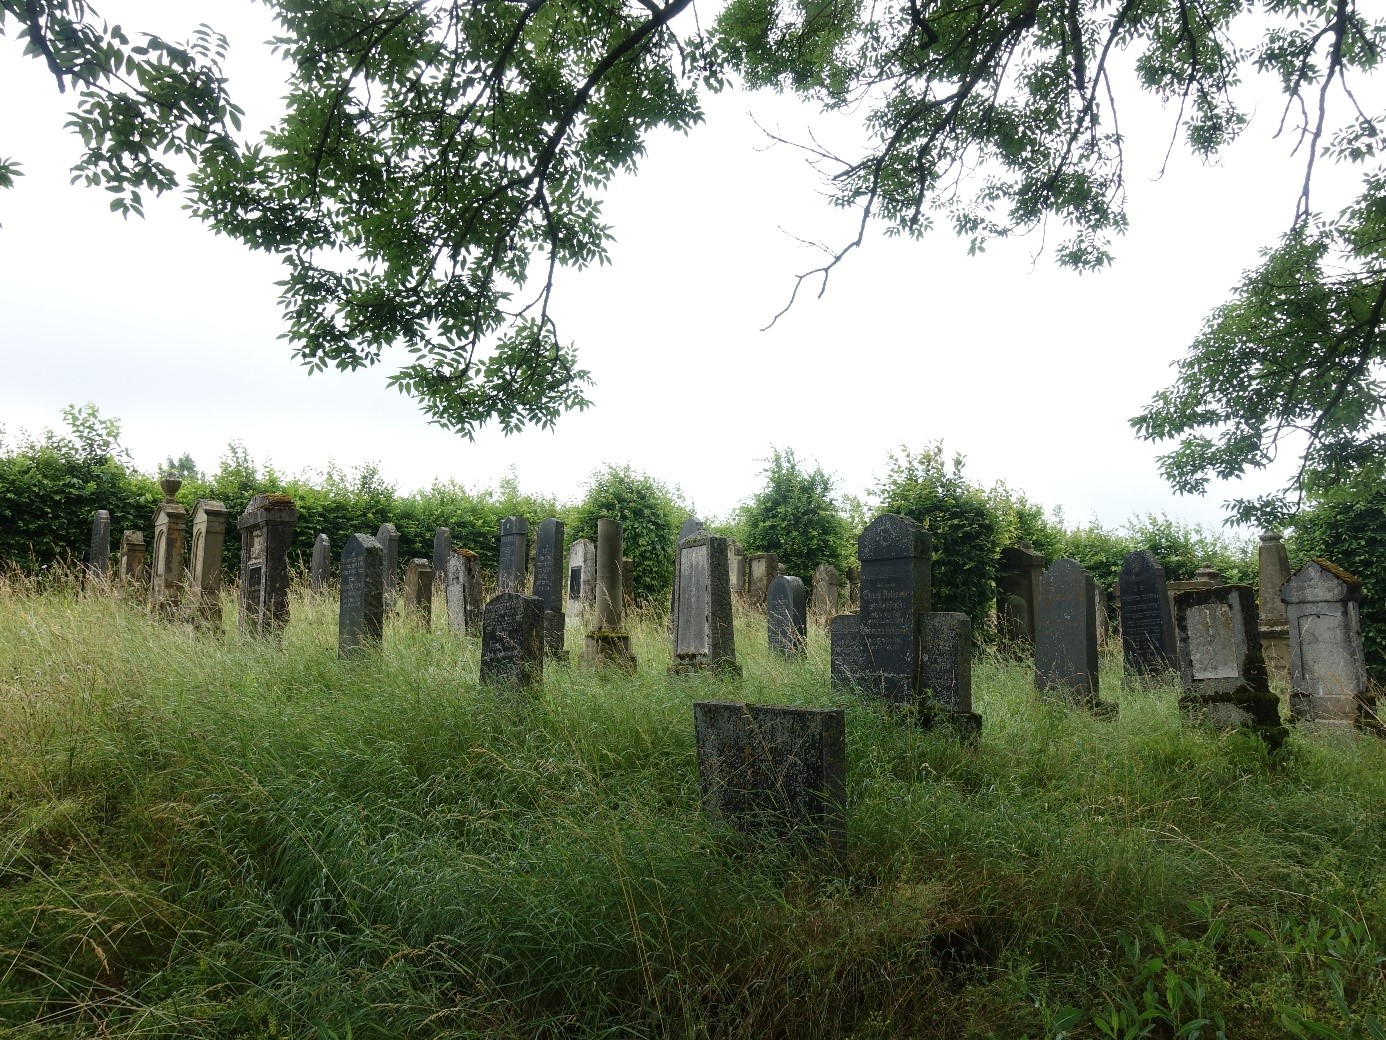  Alte Grabsteine auf dem jüdischen Friedhof in Berwangen - das Bild wird mit Klick vergrößert 